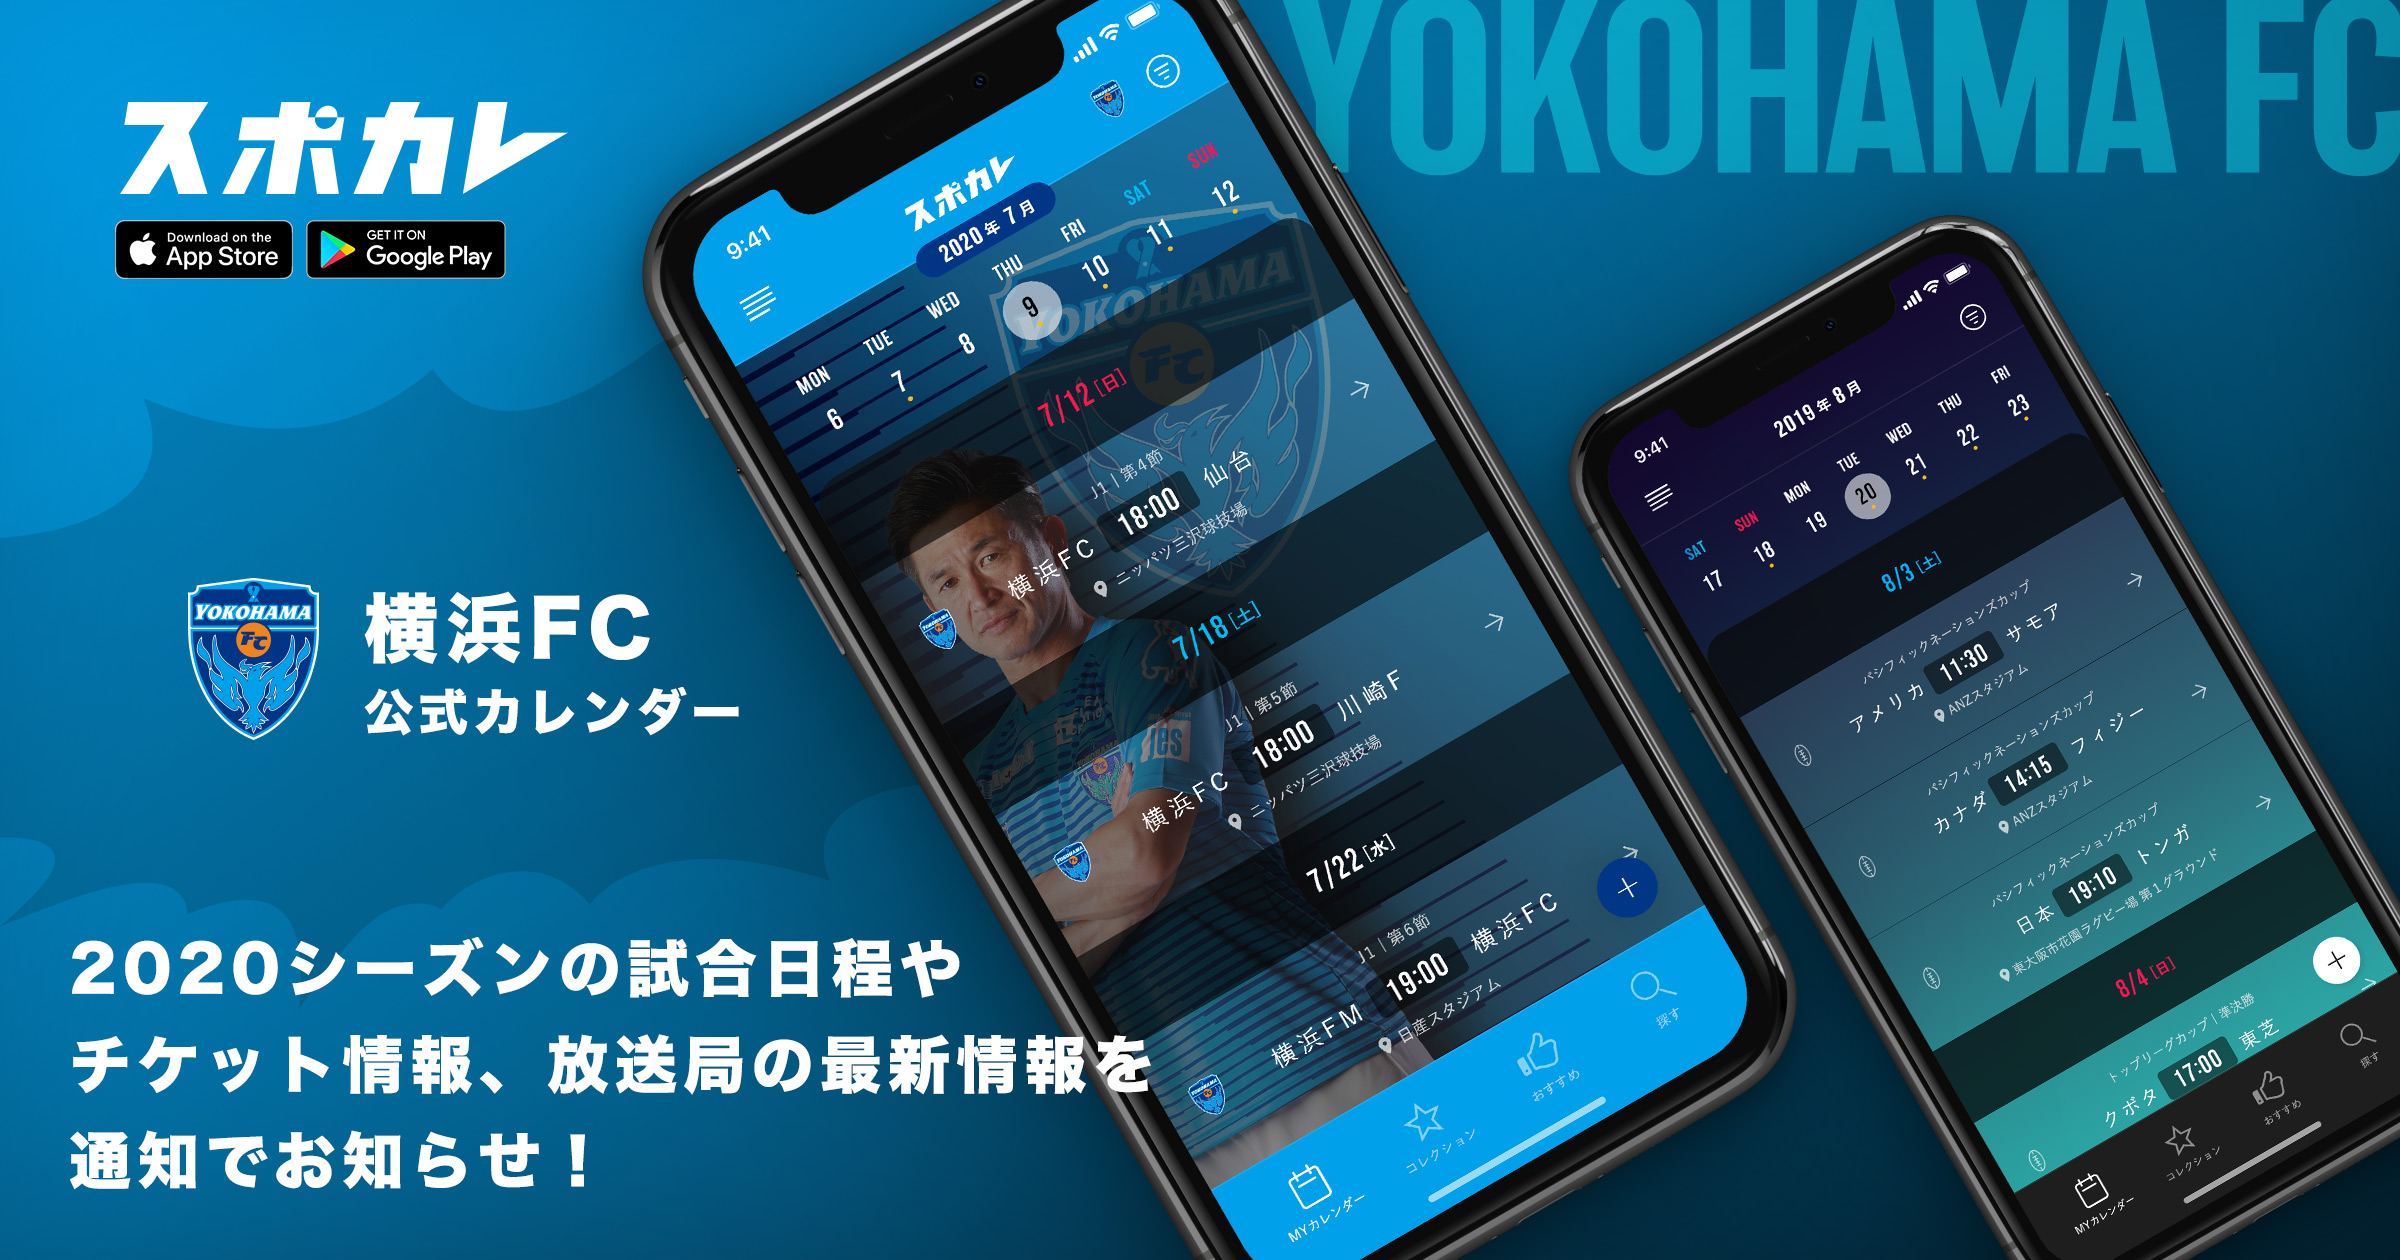 スポーツ観戦情報アプリ スポカレ にて 横浜fc公式カレンダー の配信を開始 横浜fcオフィシャルウェブサイト